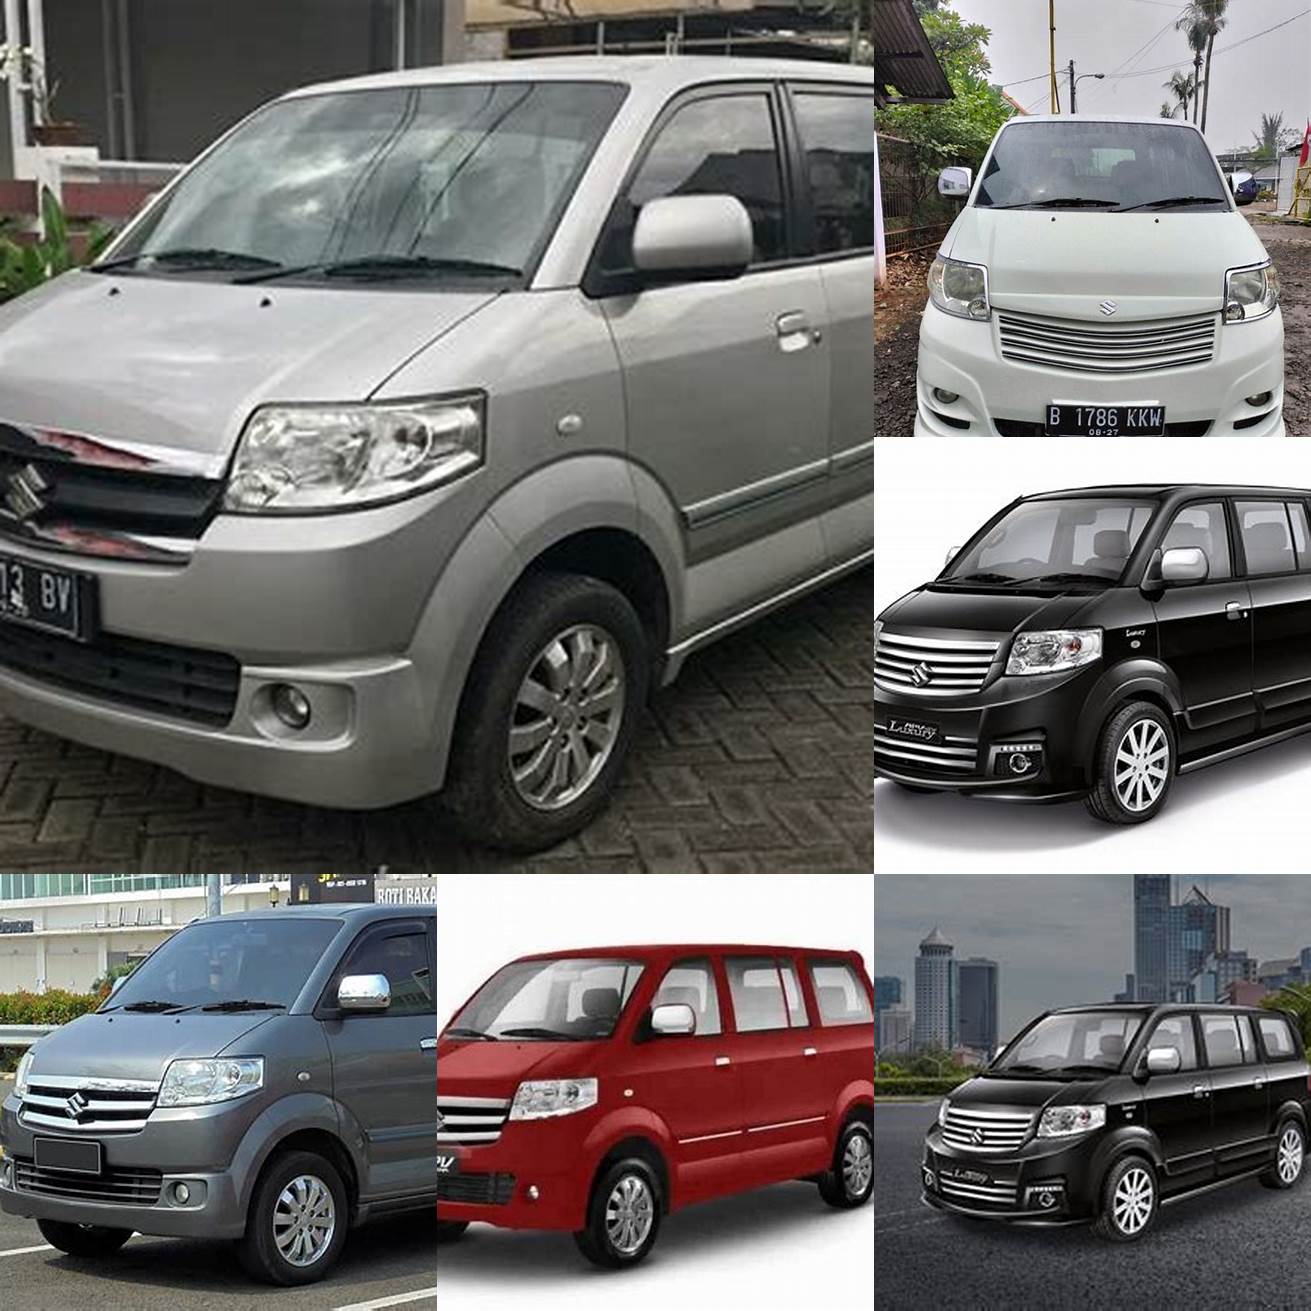 Harga mobil APV Luxury bekas tahun 2013 berkisar antara 100 - 150 juta rupiah